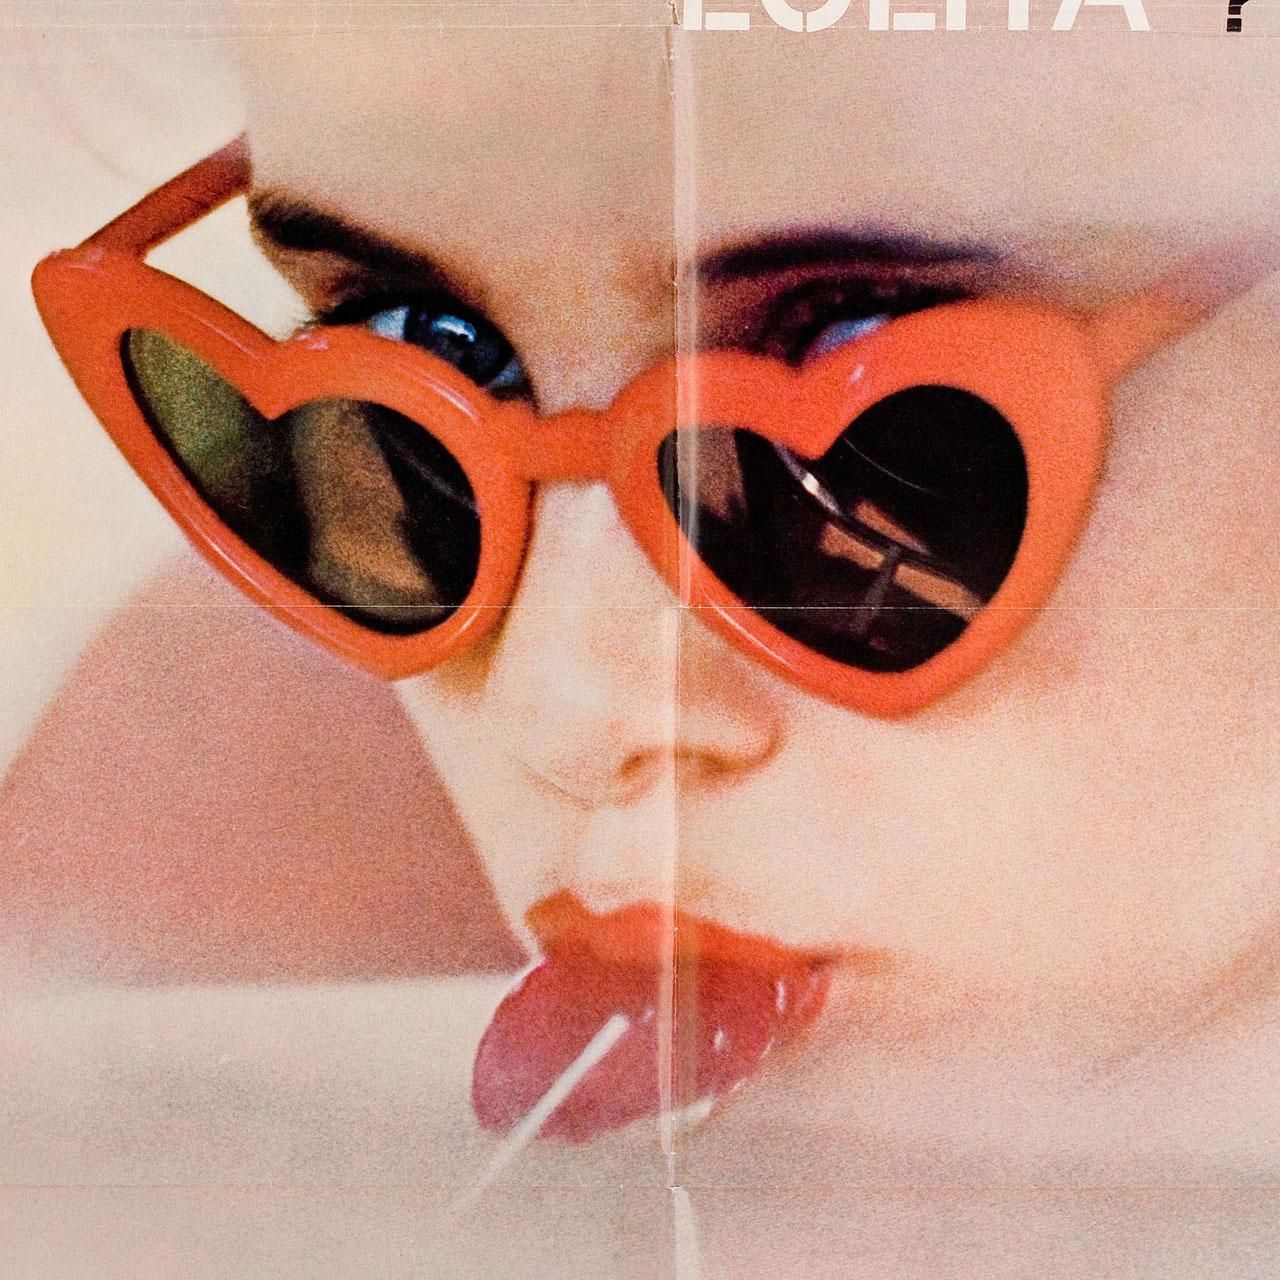 Affiche américaine originale de 1962 pour le film Lolita réalisé par Stanley Kubrick avec James Mason et Shelley Winters. Très bon état, plié avec des trous d'épingle. De nombreuses affiches originales ont été publiées pliées ou ont été pliées par